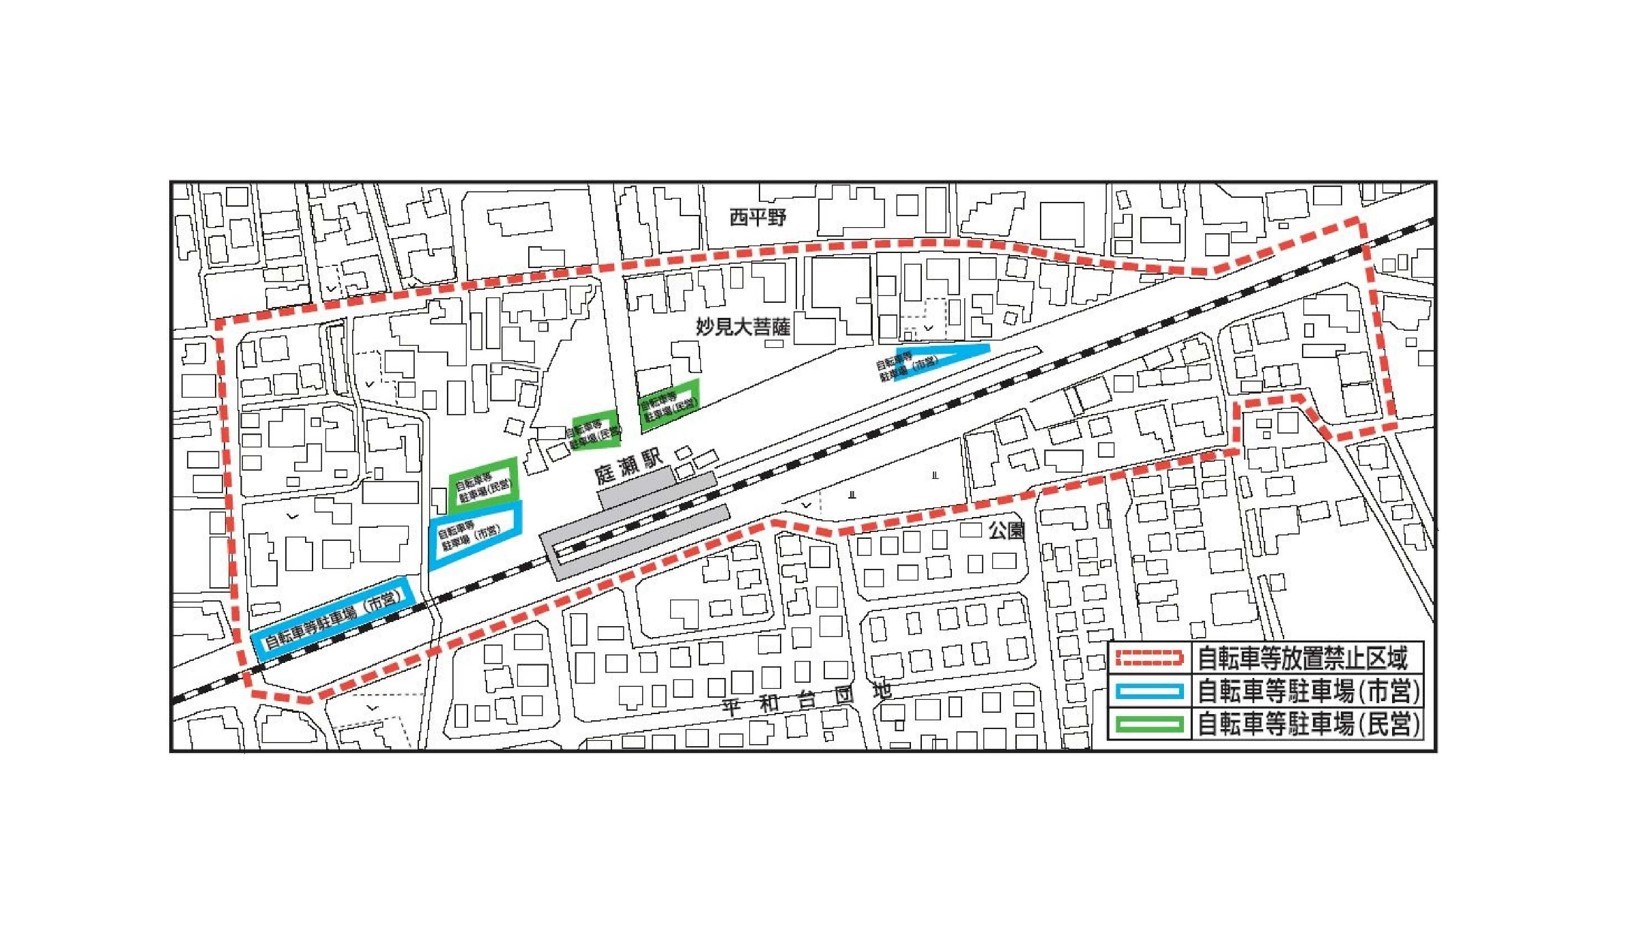 庭瀬駅周辺の放置禁止区域並びに自転車等駐車場の位置図